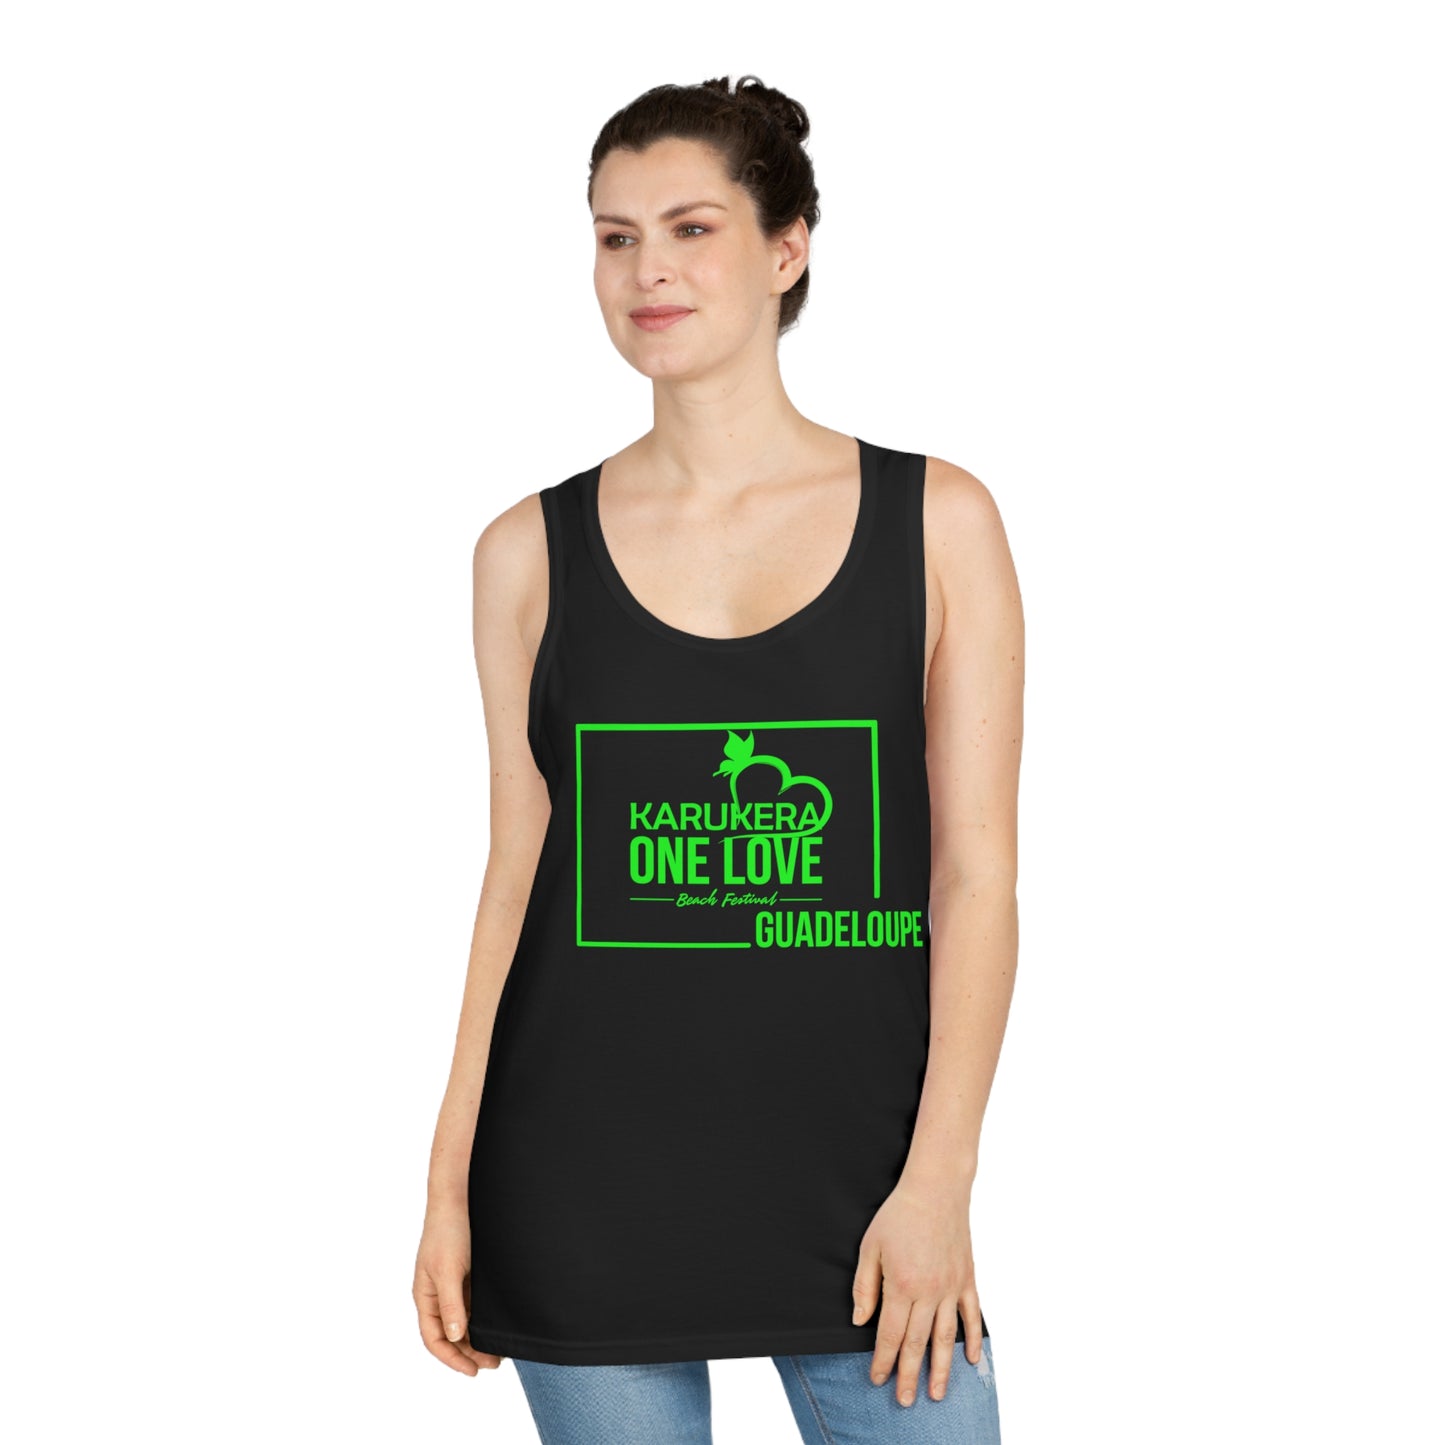 Kerukera One Love Guadeloupe Unisex Softstyle™ Tank Top (green)